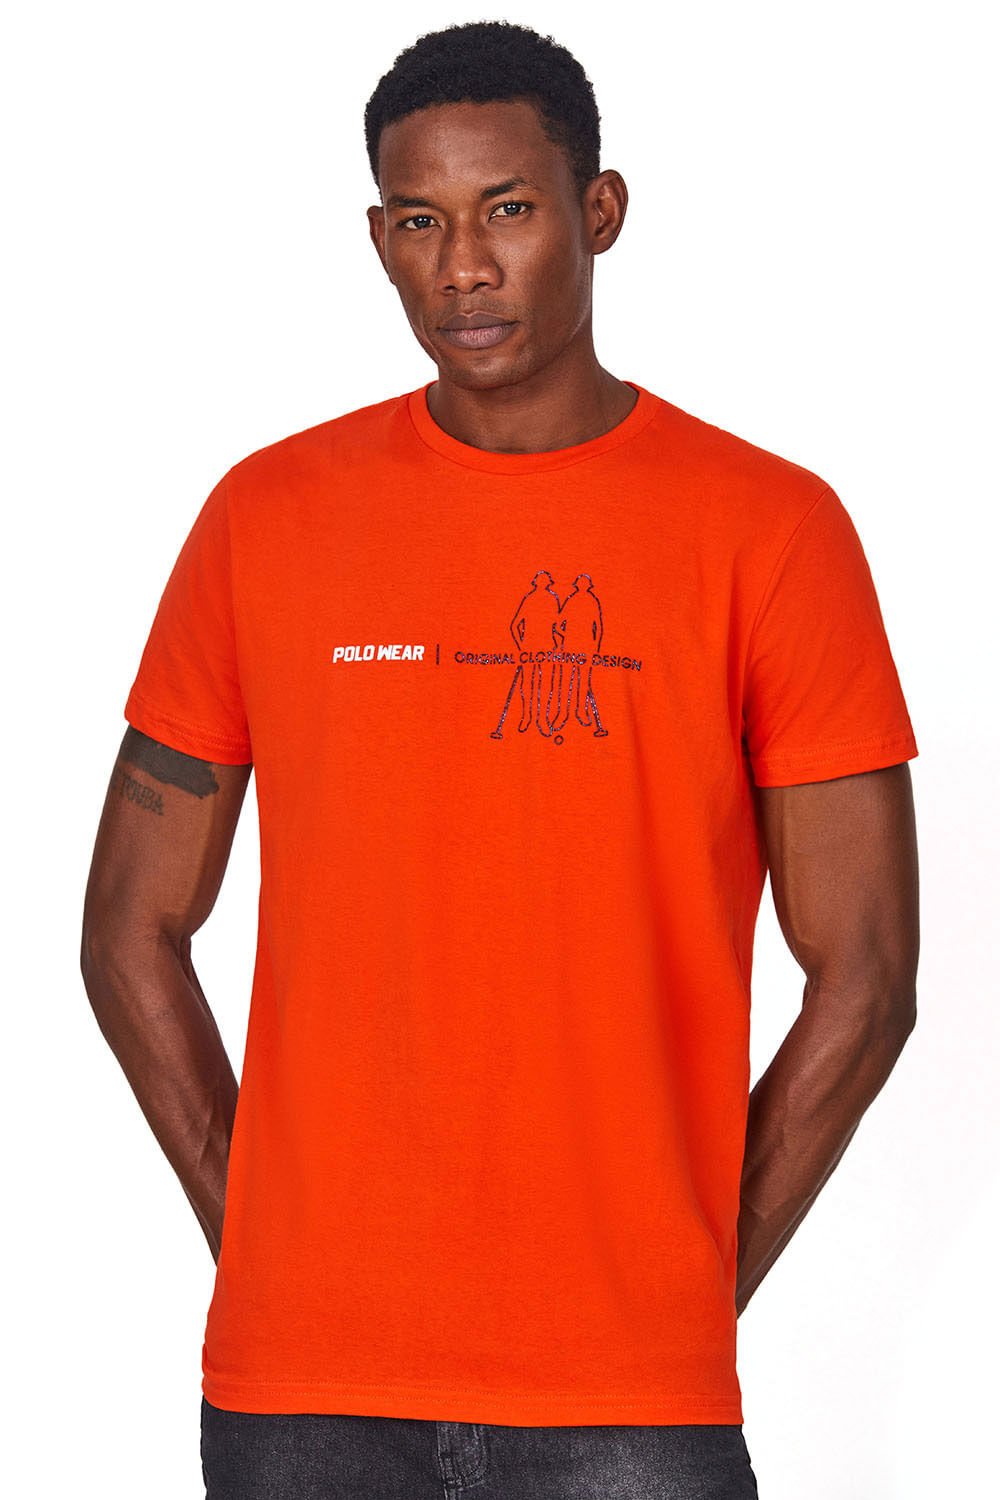 Camiseta Clothing Design Polo Wear Vermelho Médio